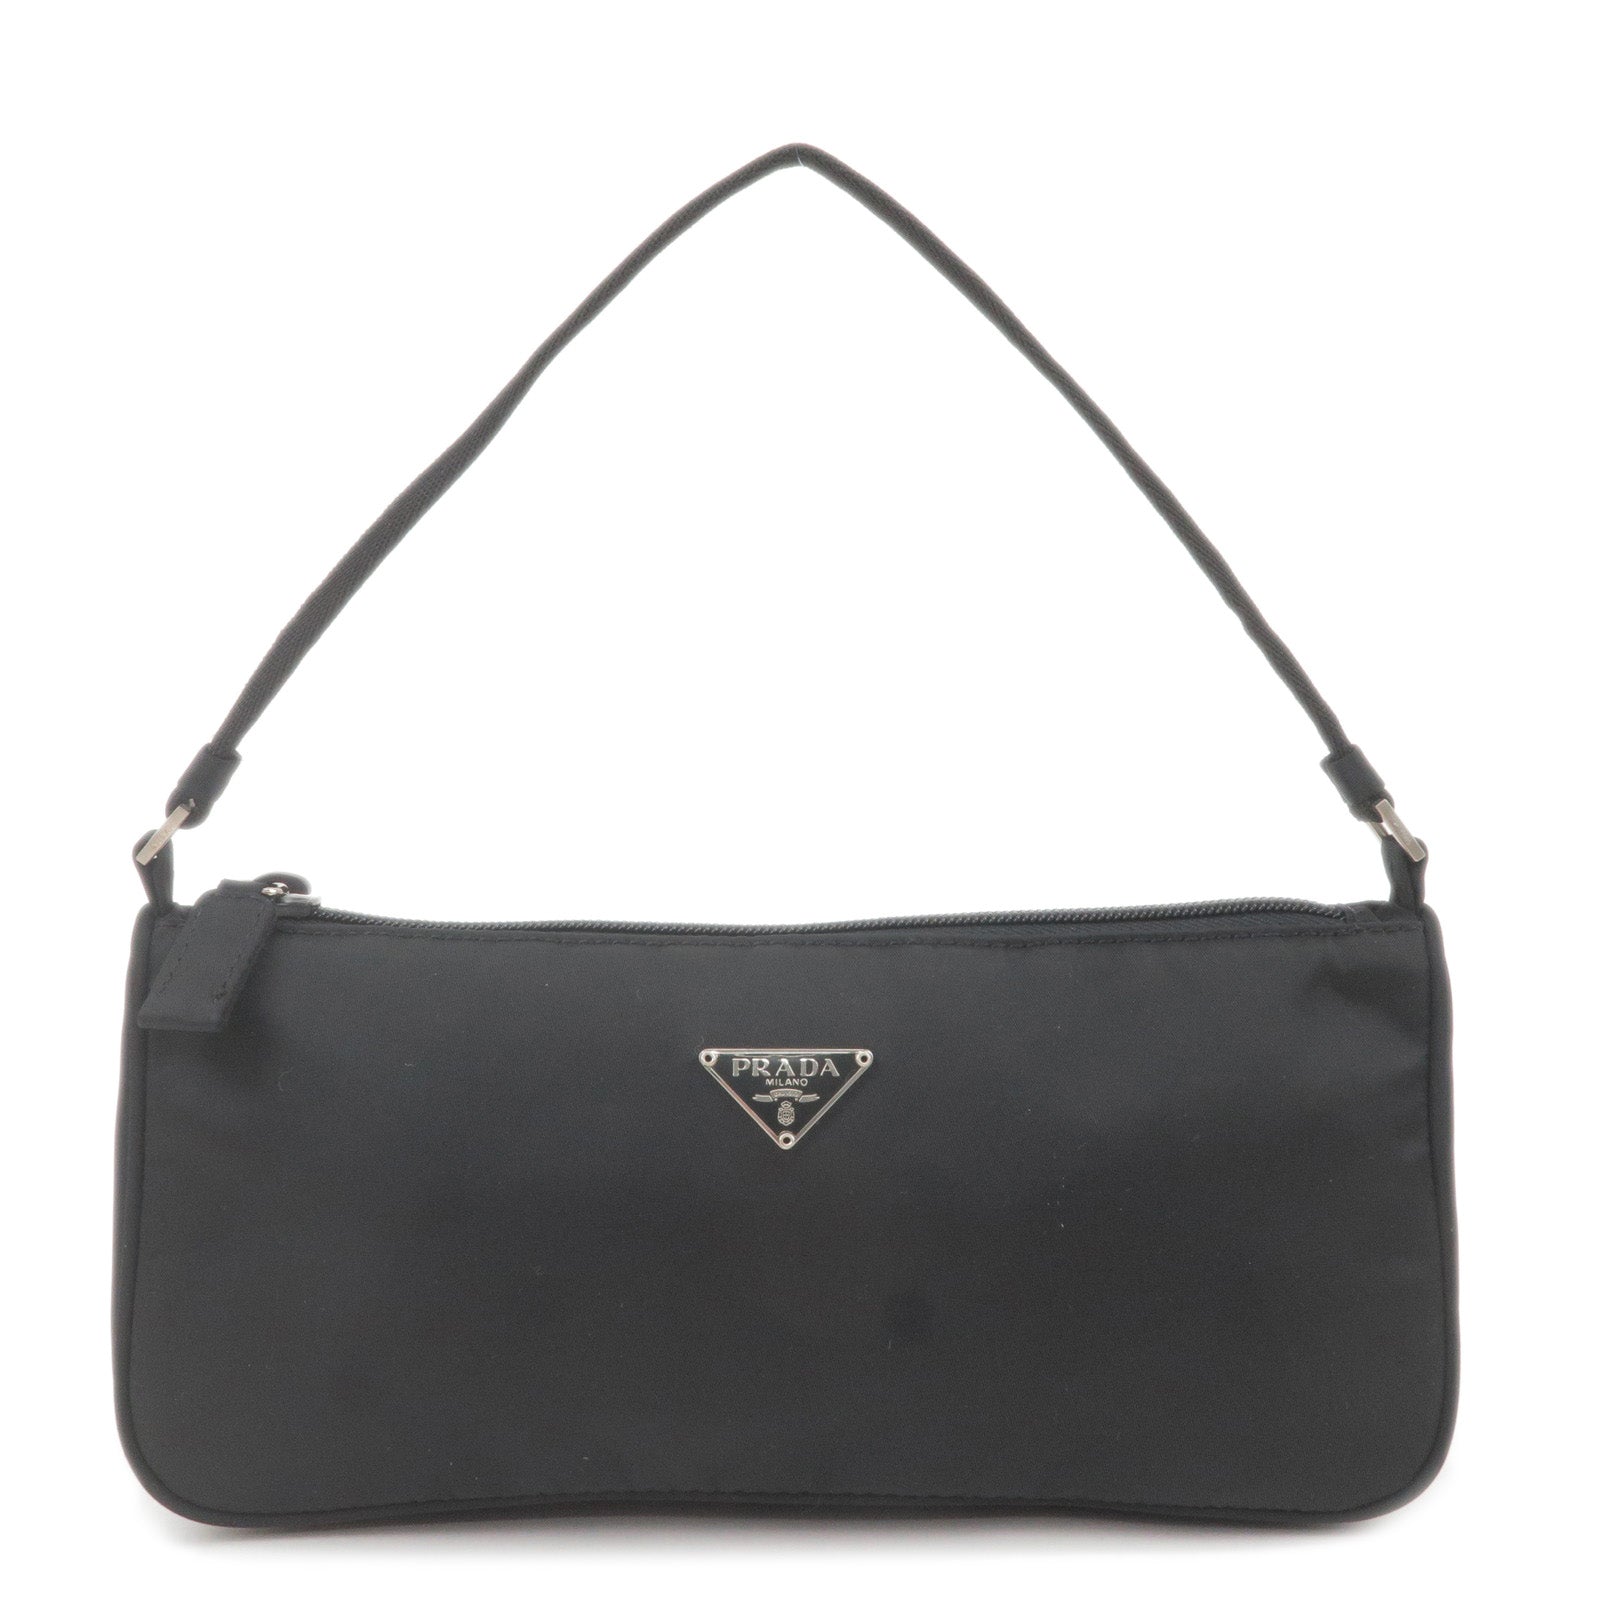 LOUIS VUITTON > Bag > Damier – dct-ep_vintage luxury Store